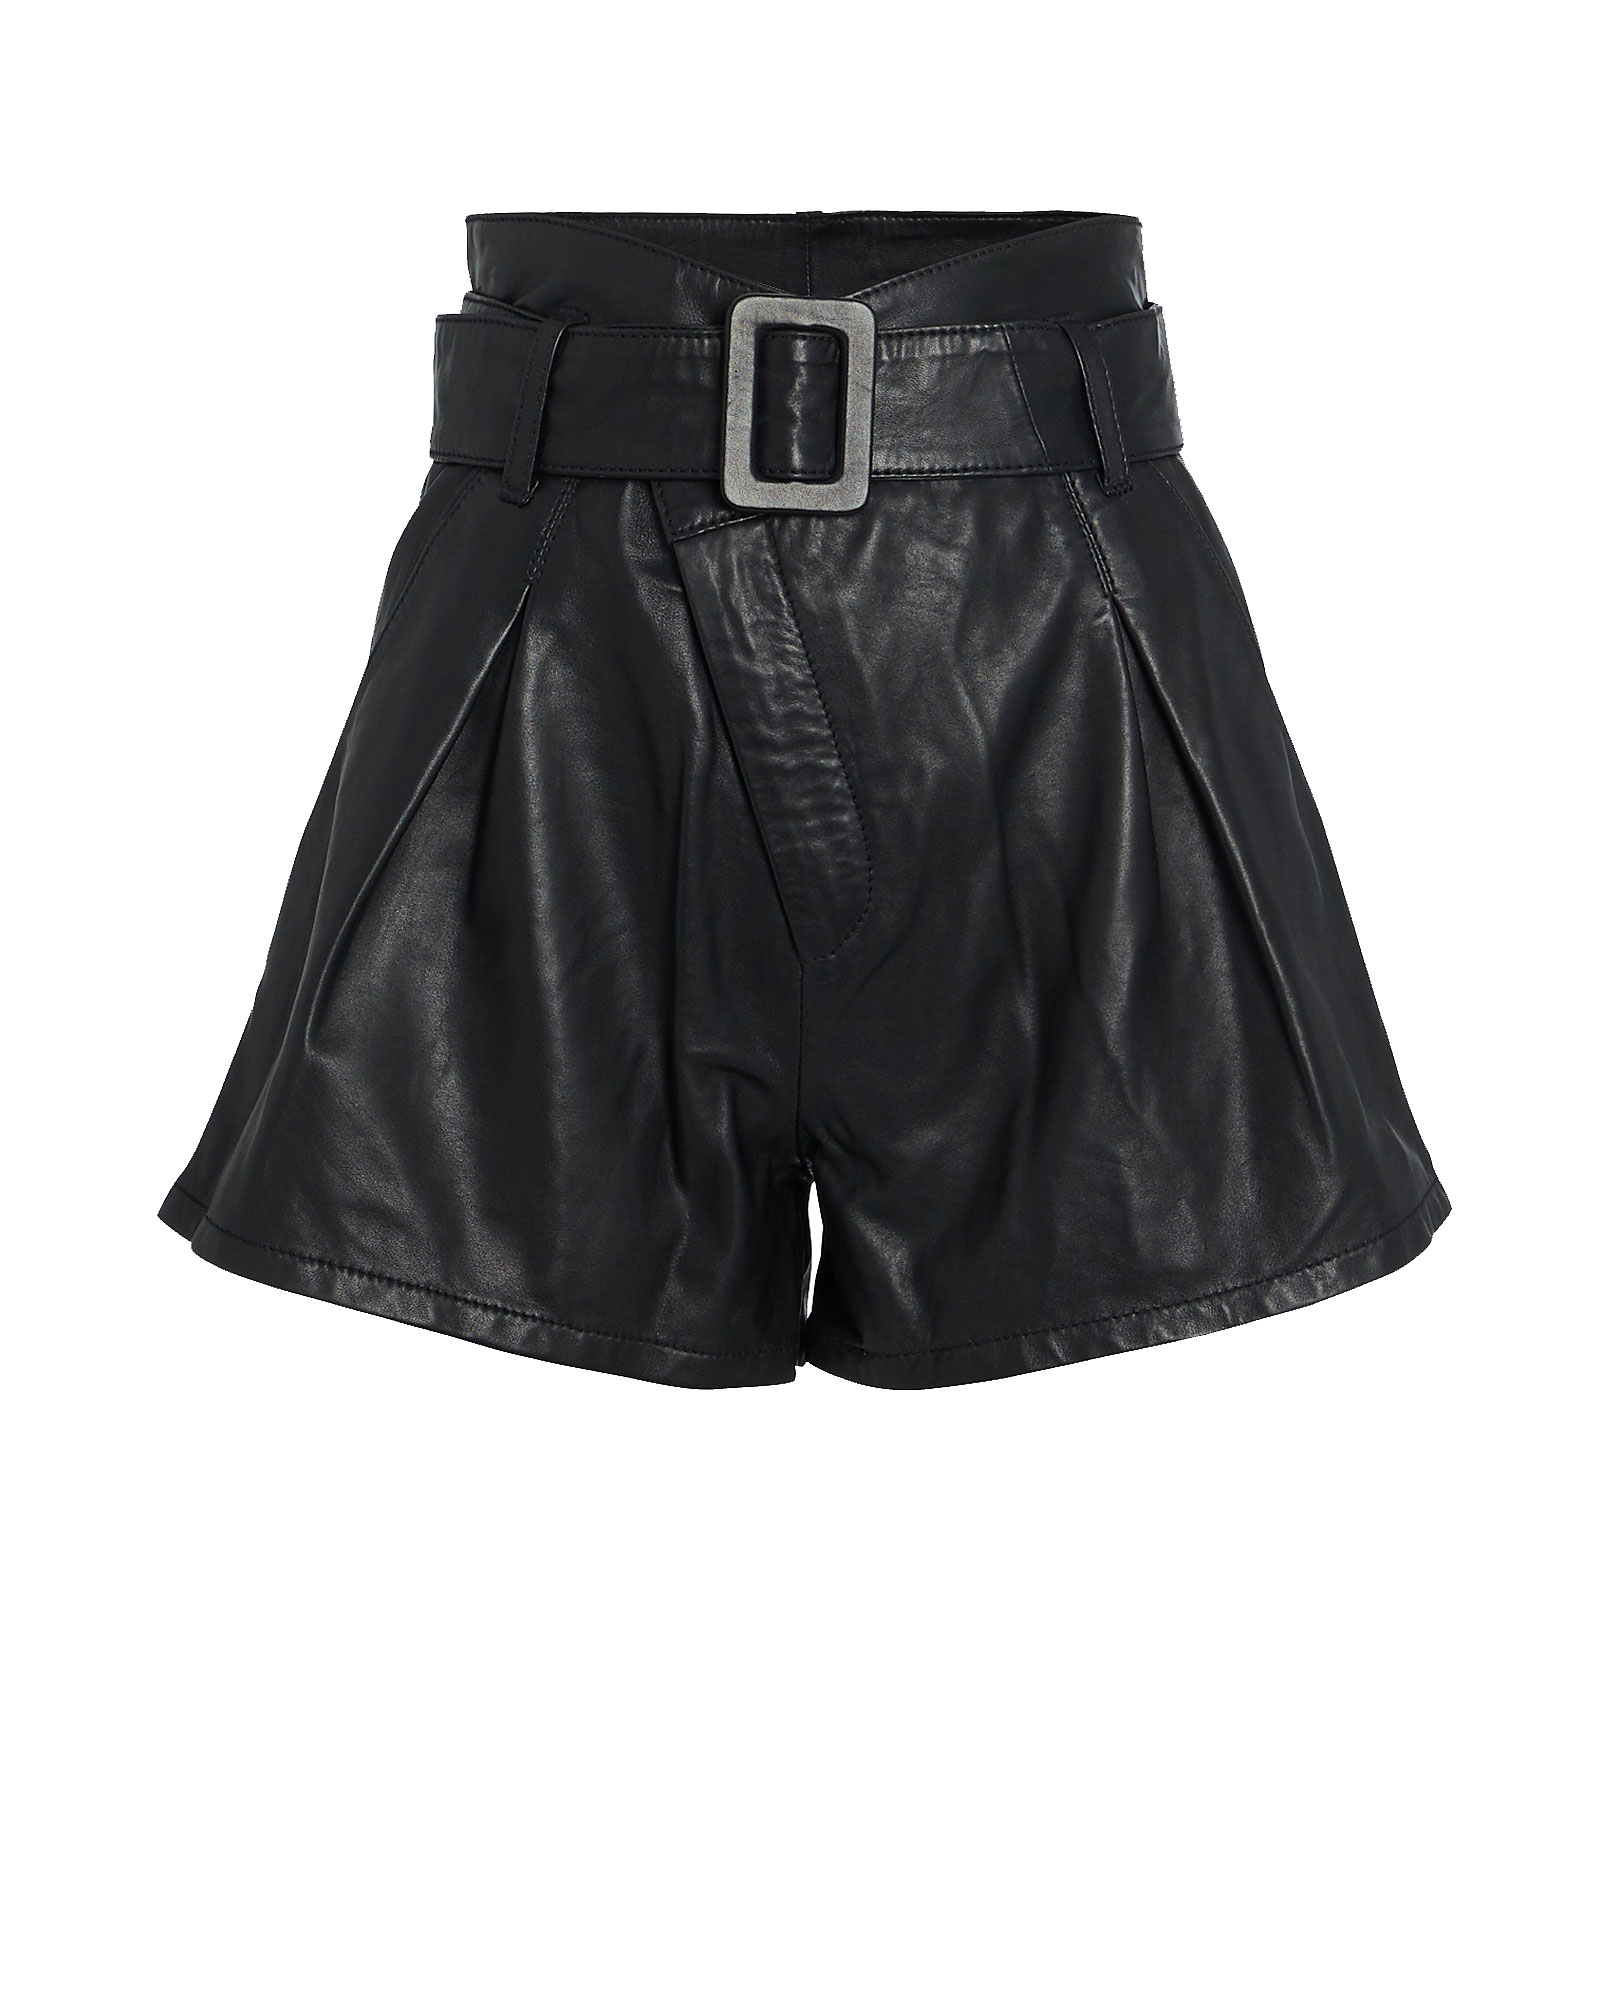 Marissa Webb | Levi Belted Leather Shorts | INTERMIX®